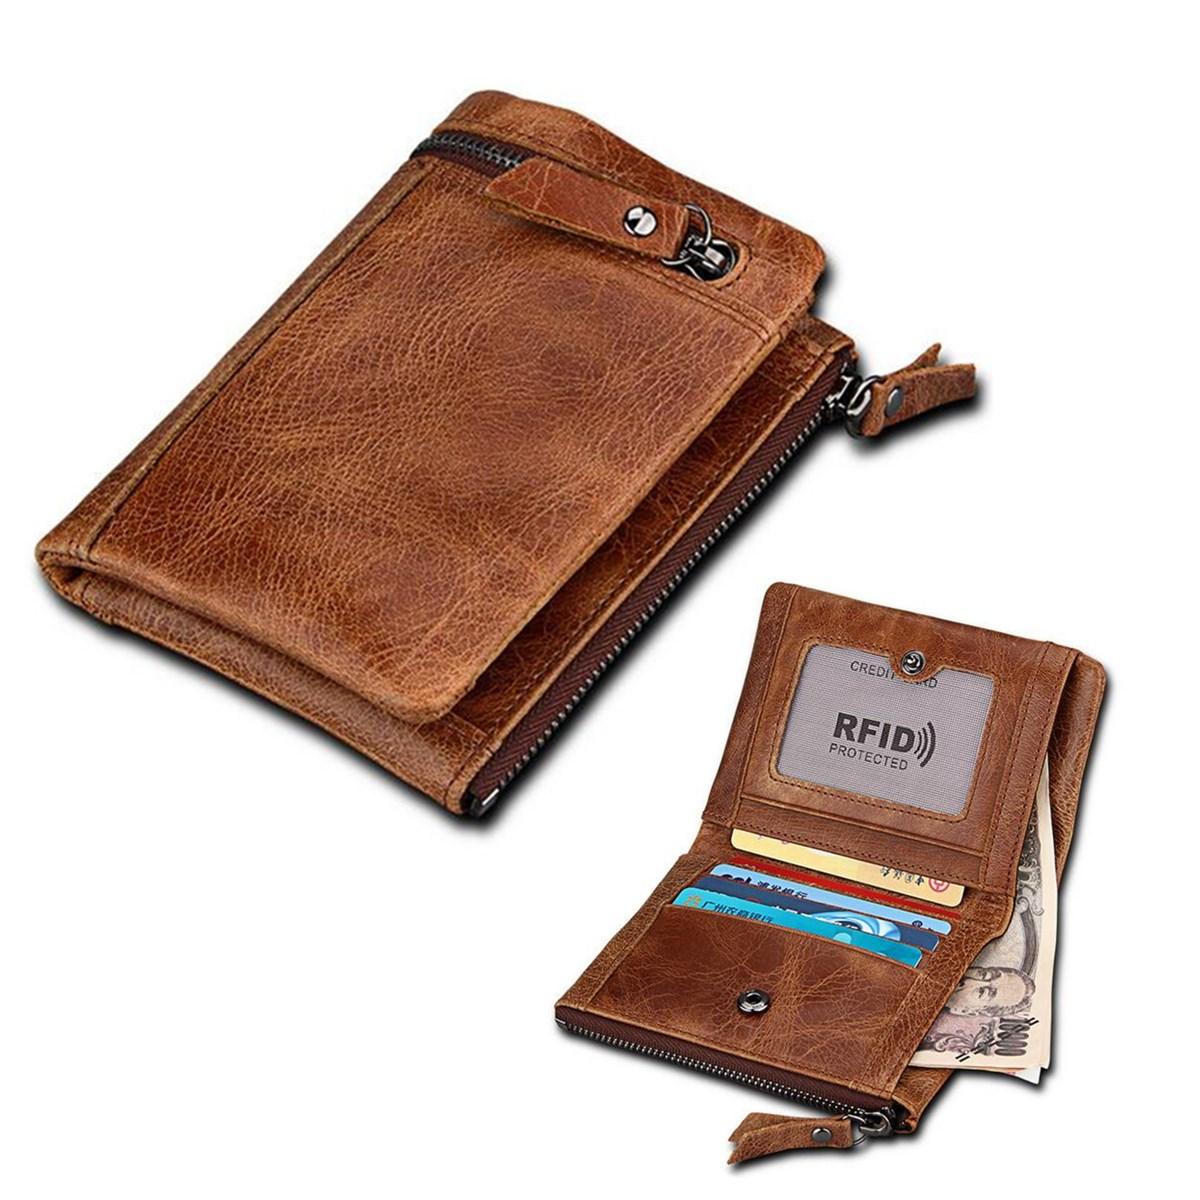 الرجال إبري ® RFID حجب محفظة قصيرة جلد طبيعي براون عملة حامل البطاقة محفظة